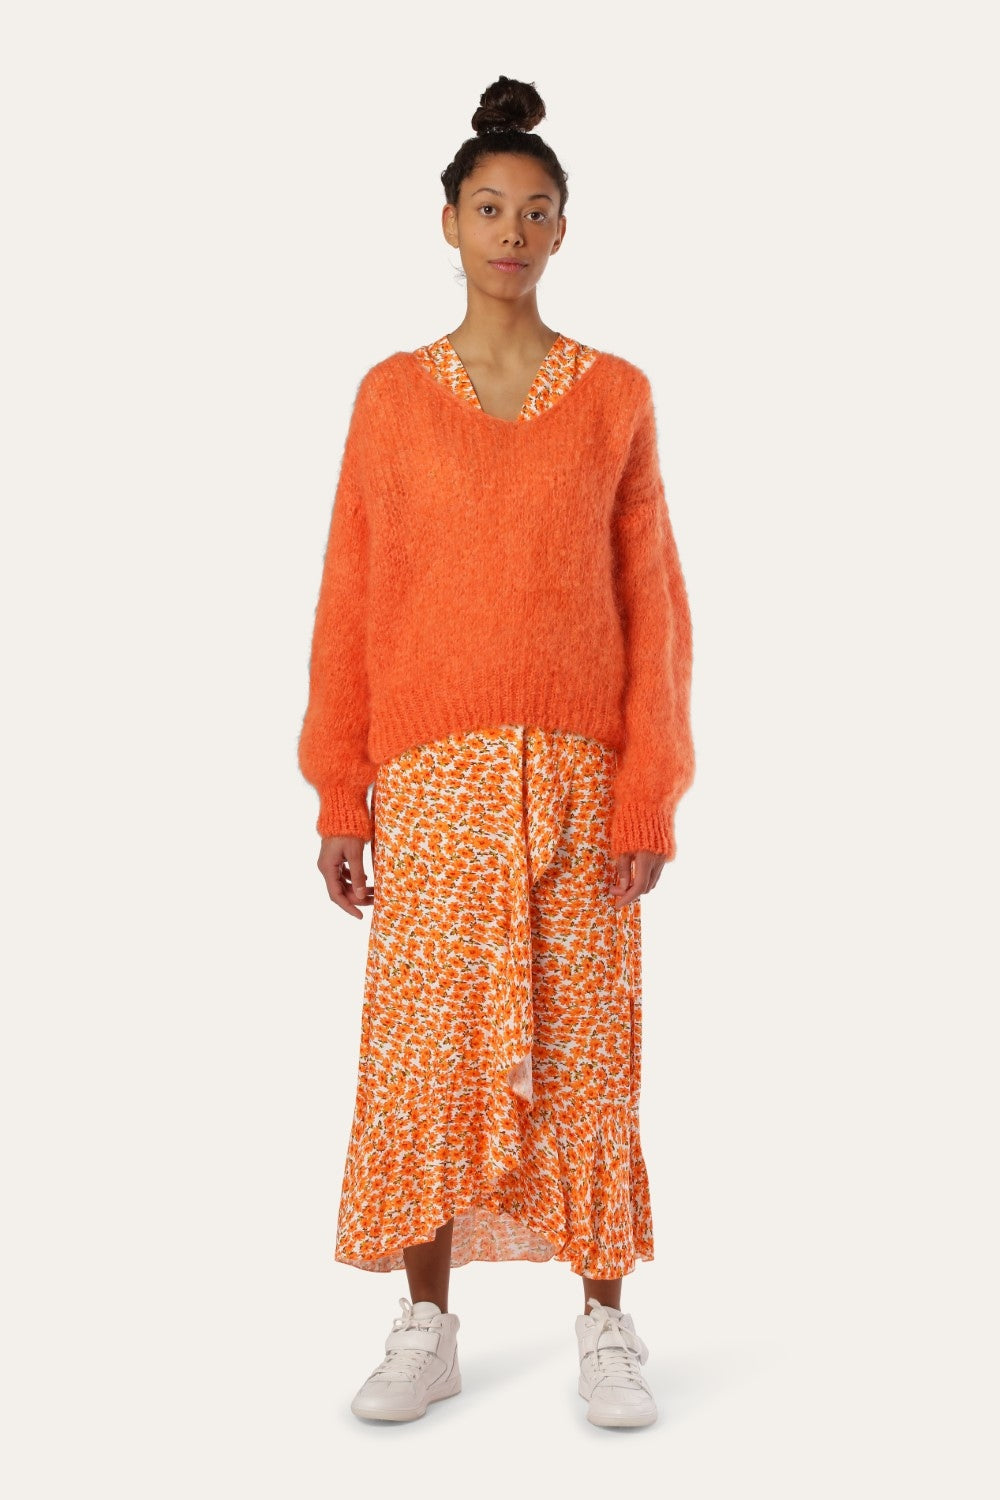 Milly Wrap Dress Long Orange Flower